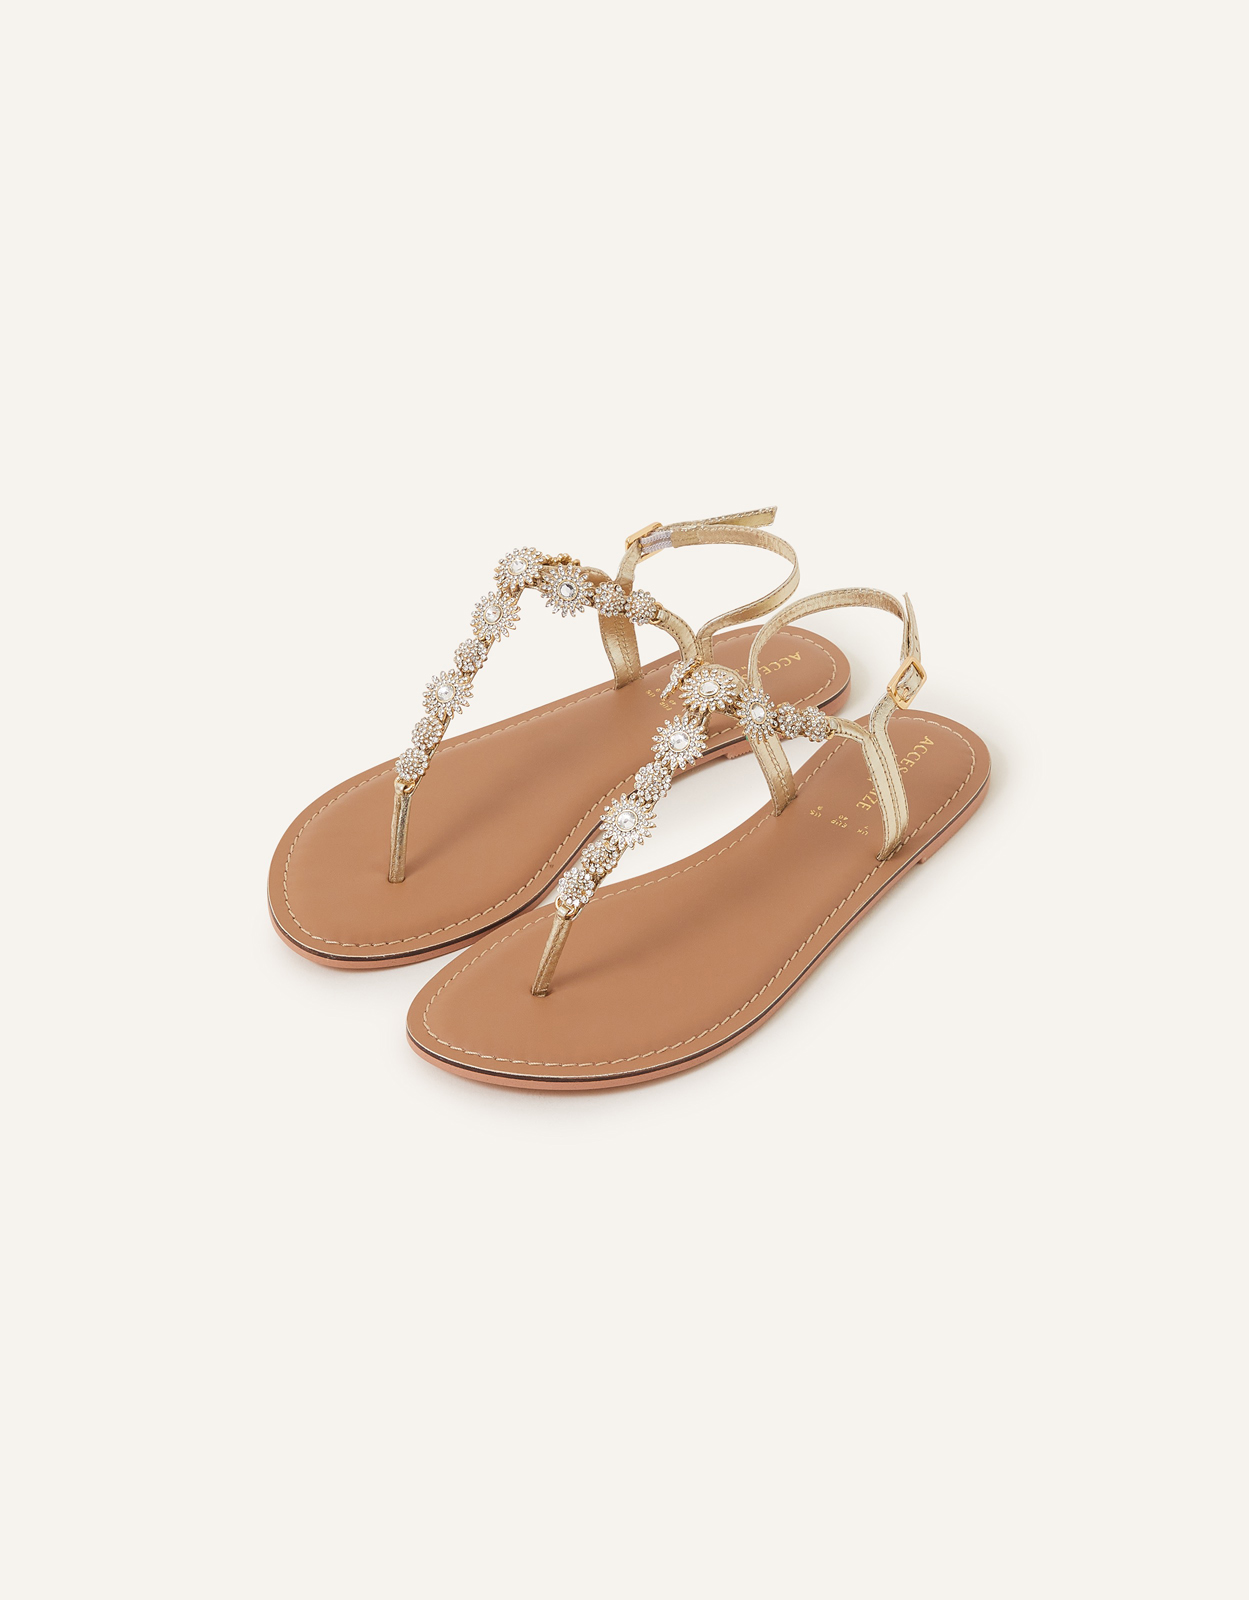 Accessorize Women's White Rome Sparkle Sandals, Size: 41